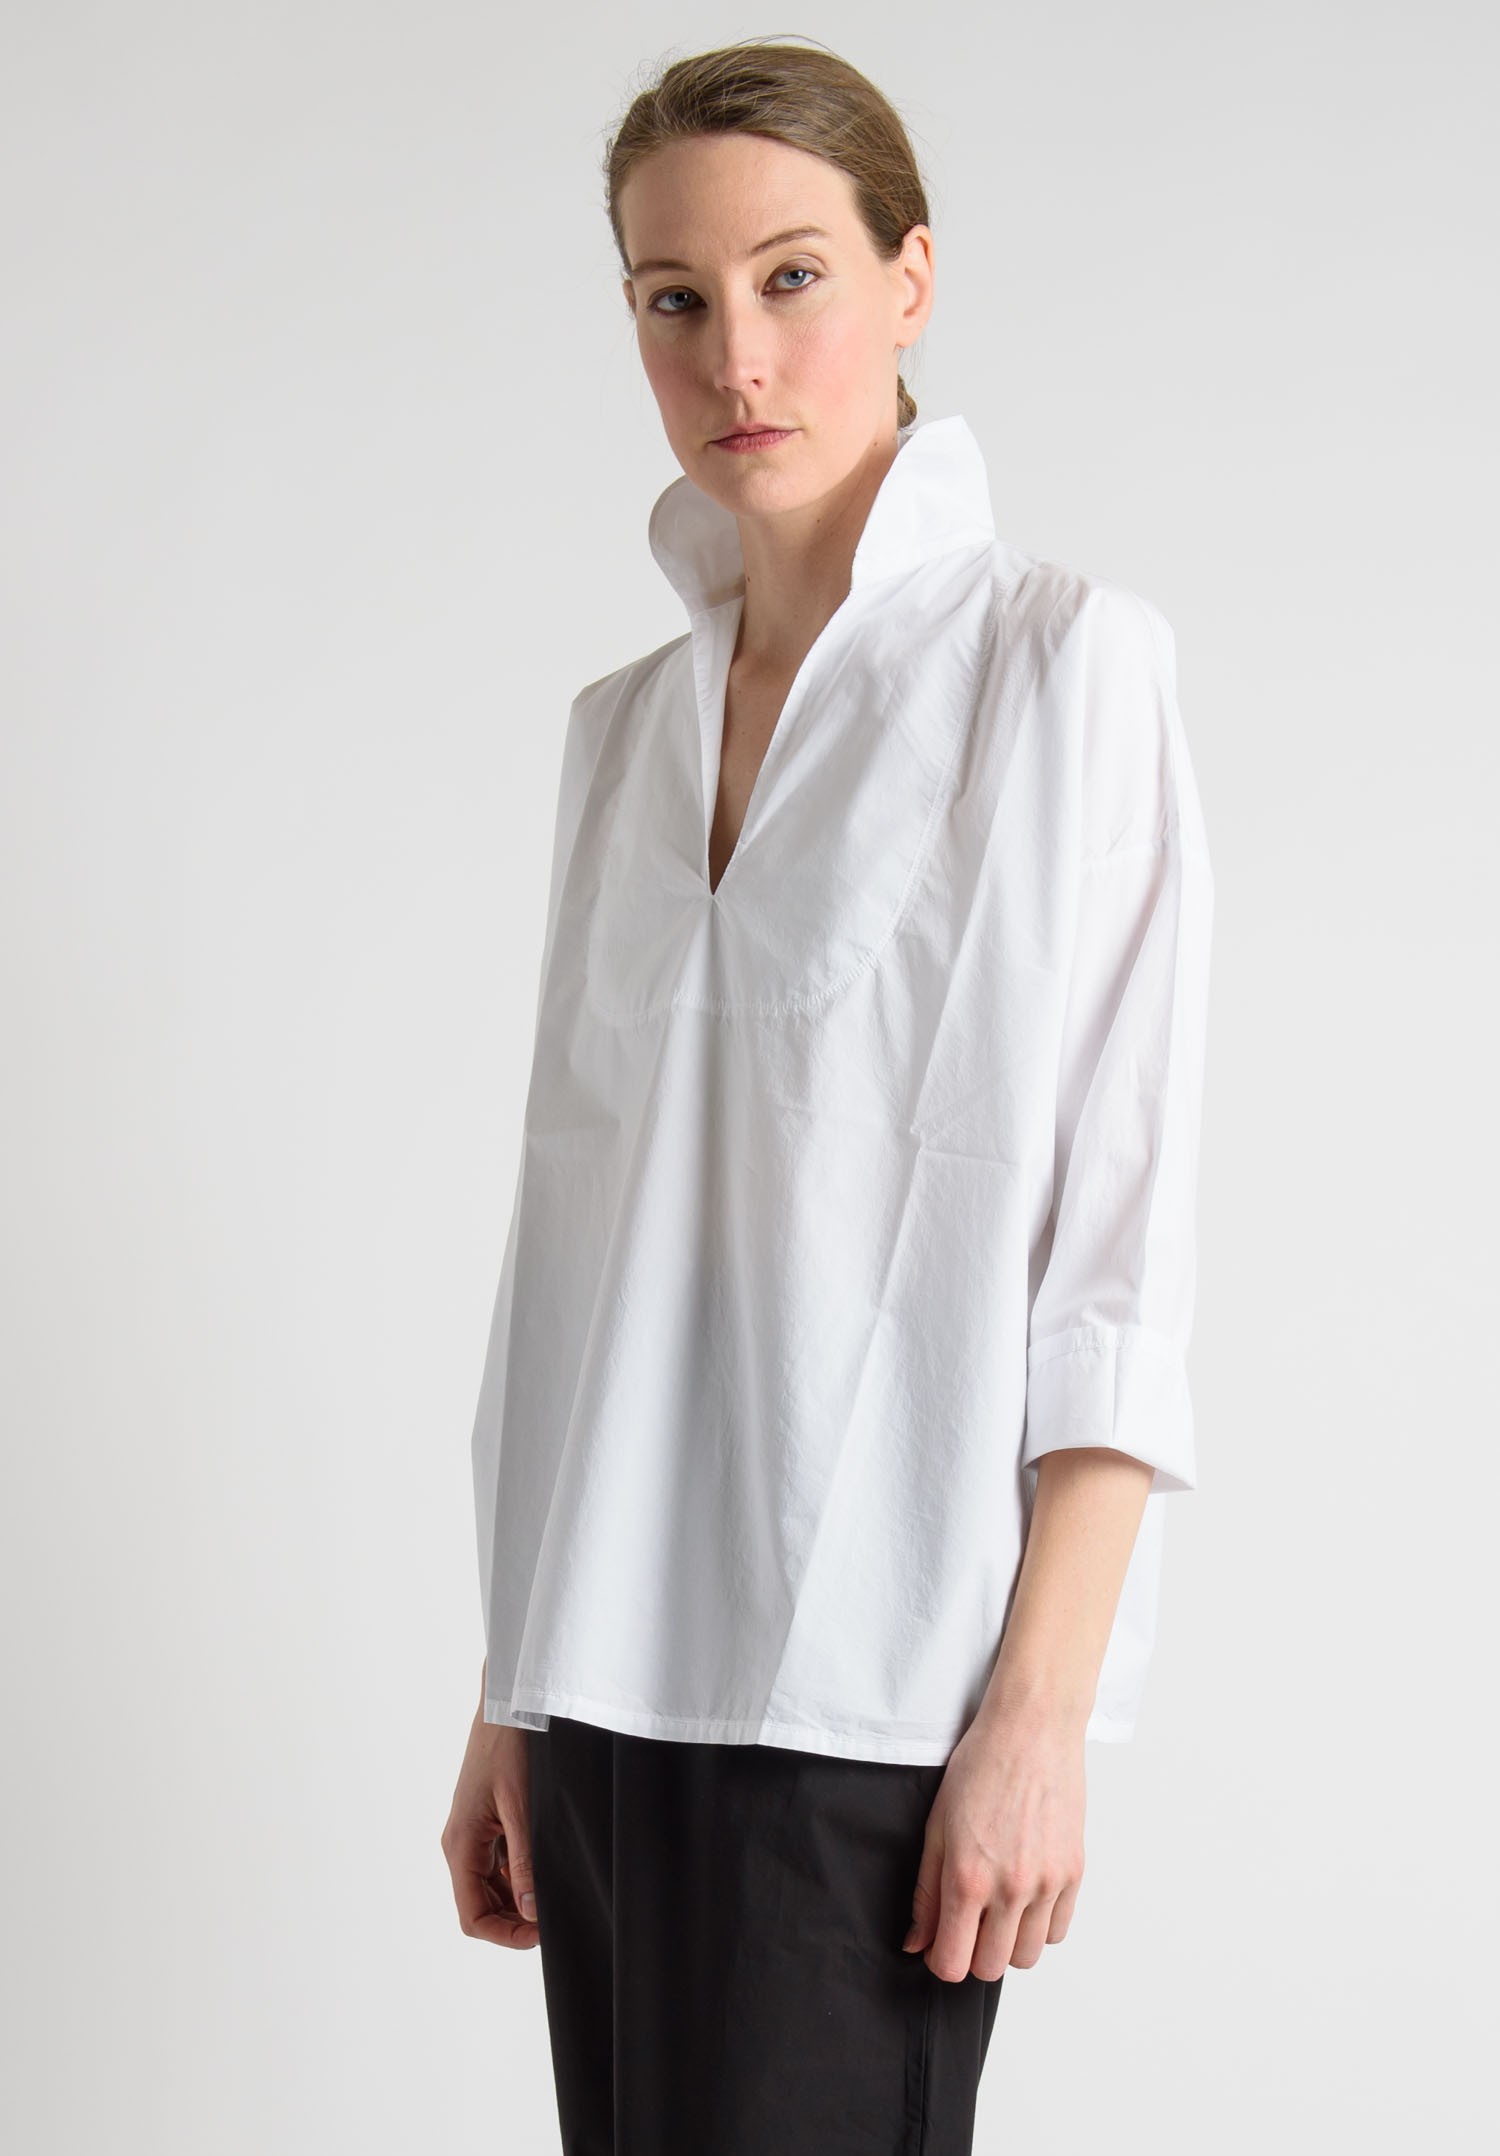 Labo.Art Cotton Open V-Neck Shirt in White | Santa Fe Dry Goods Trippen ...